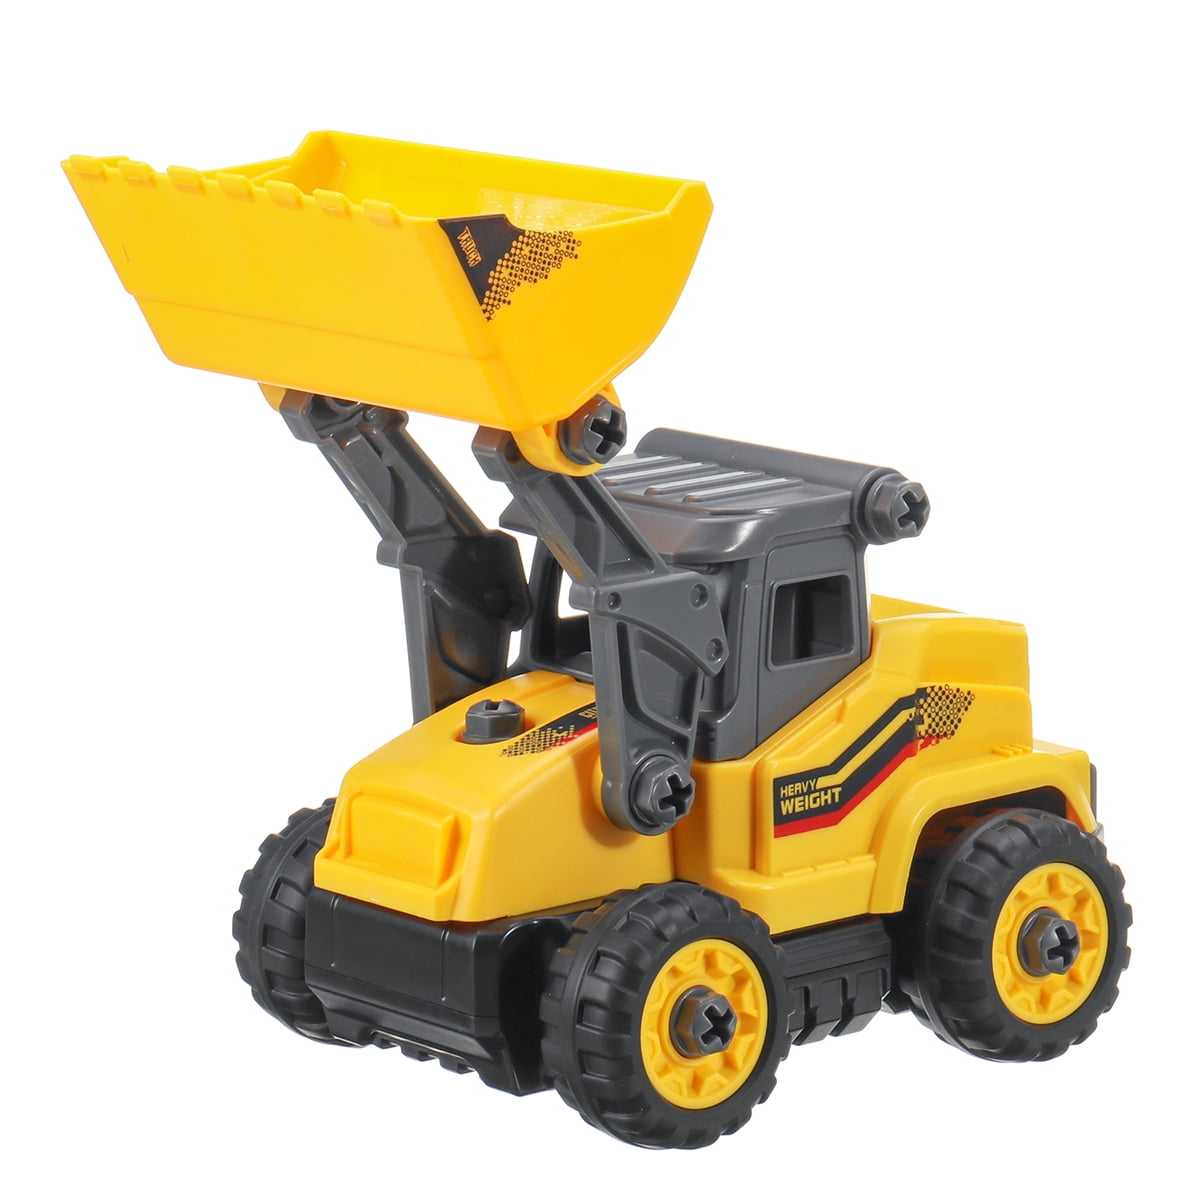 SARTHAM Huge Size Go Construction Bulldozer Truck Toy Vehicle